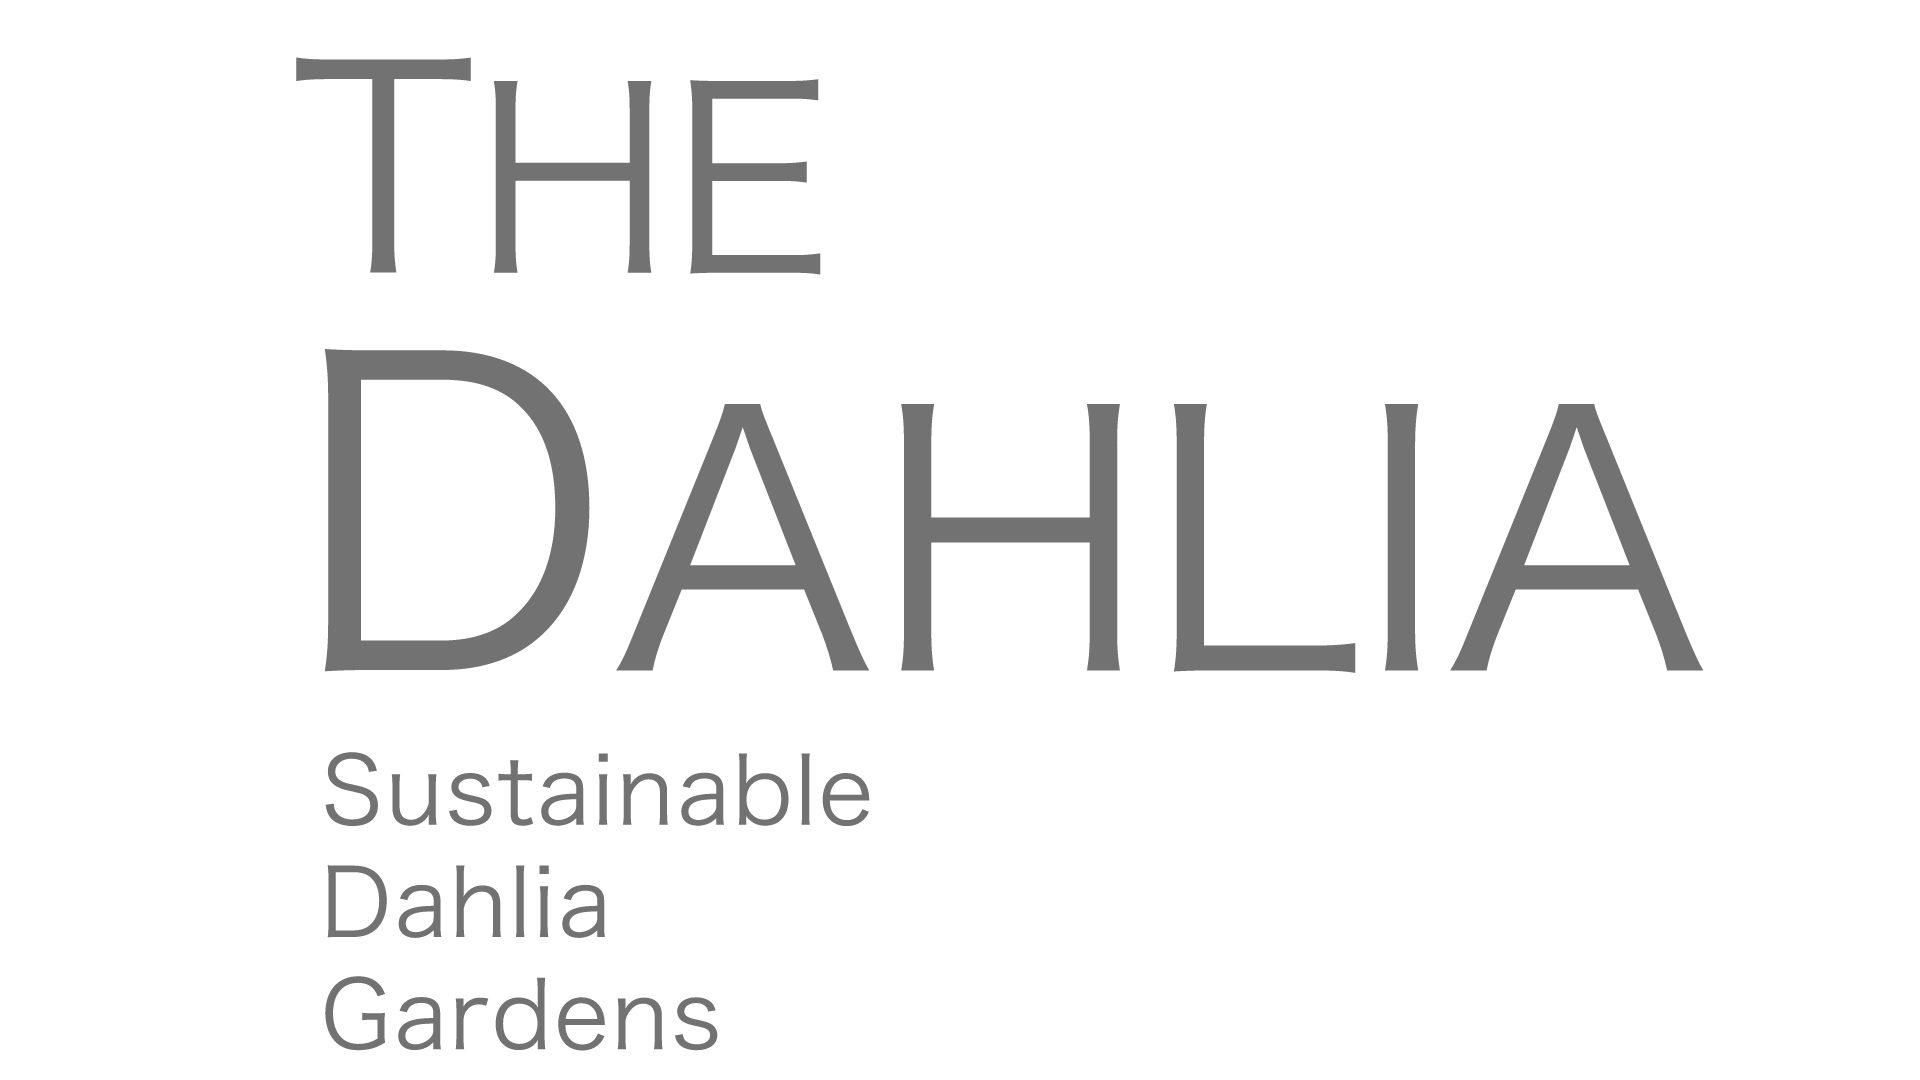 THE DAHLIA